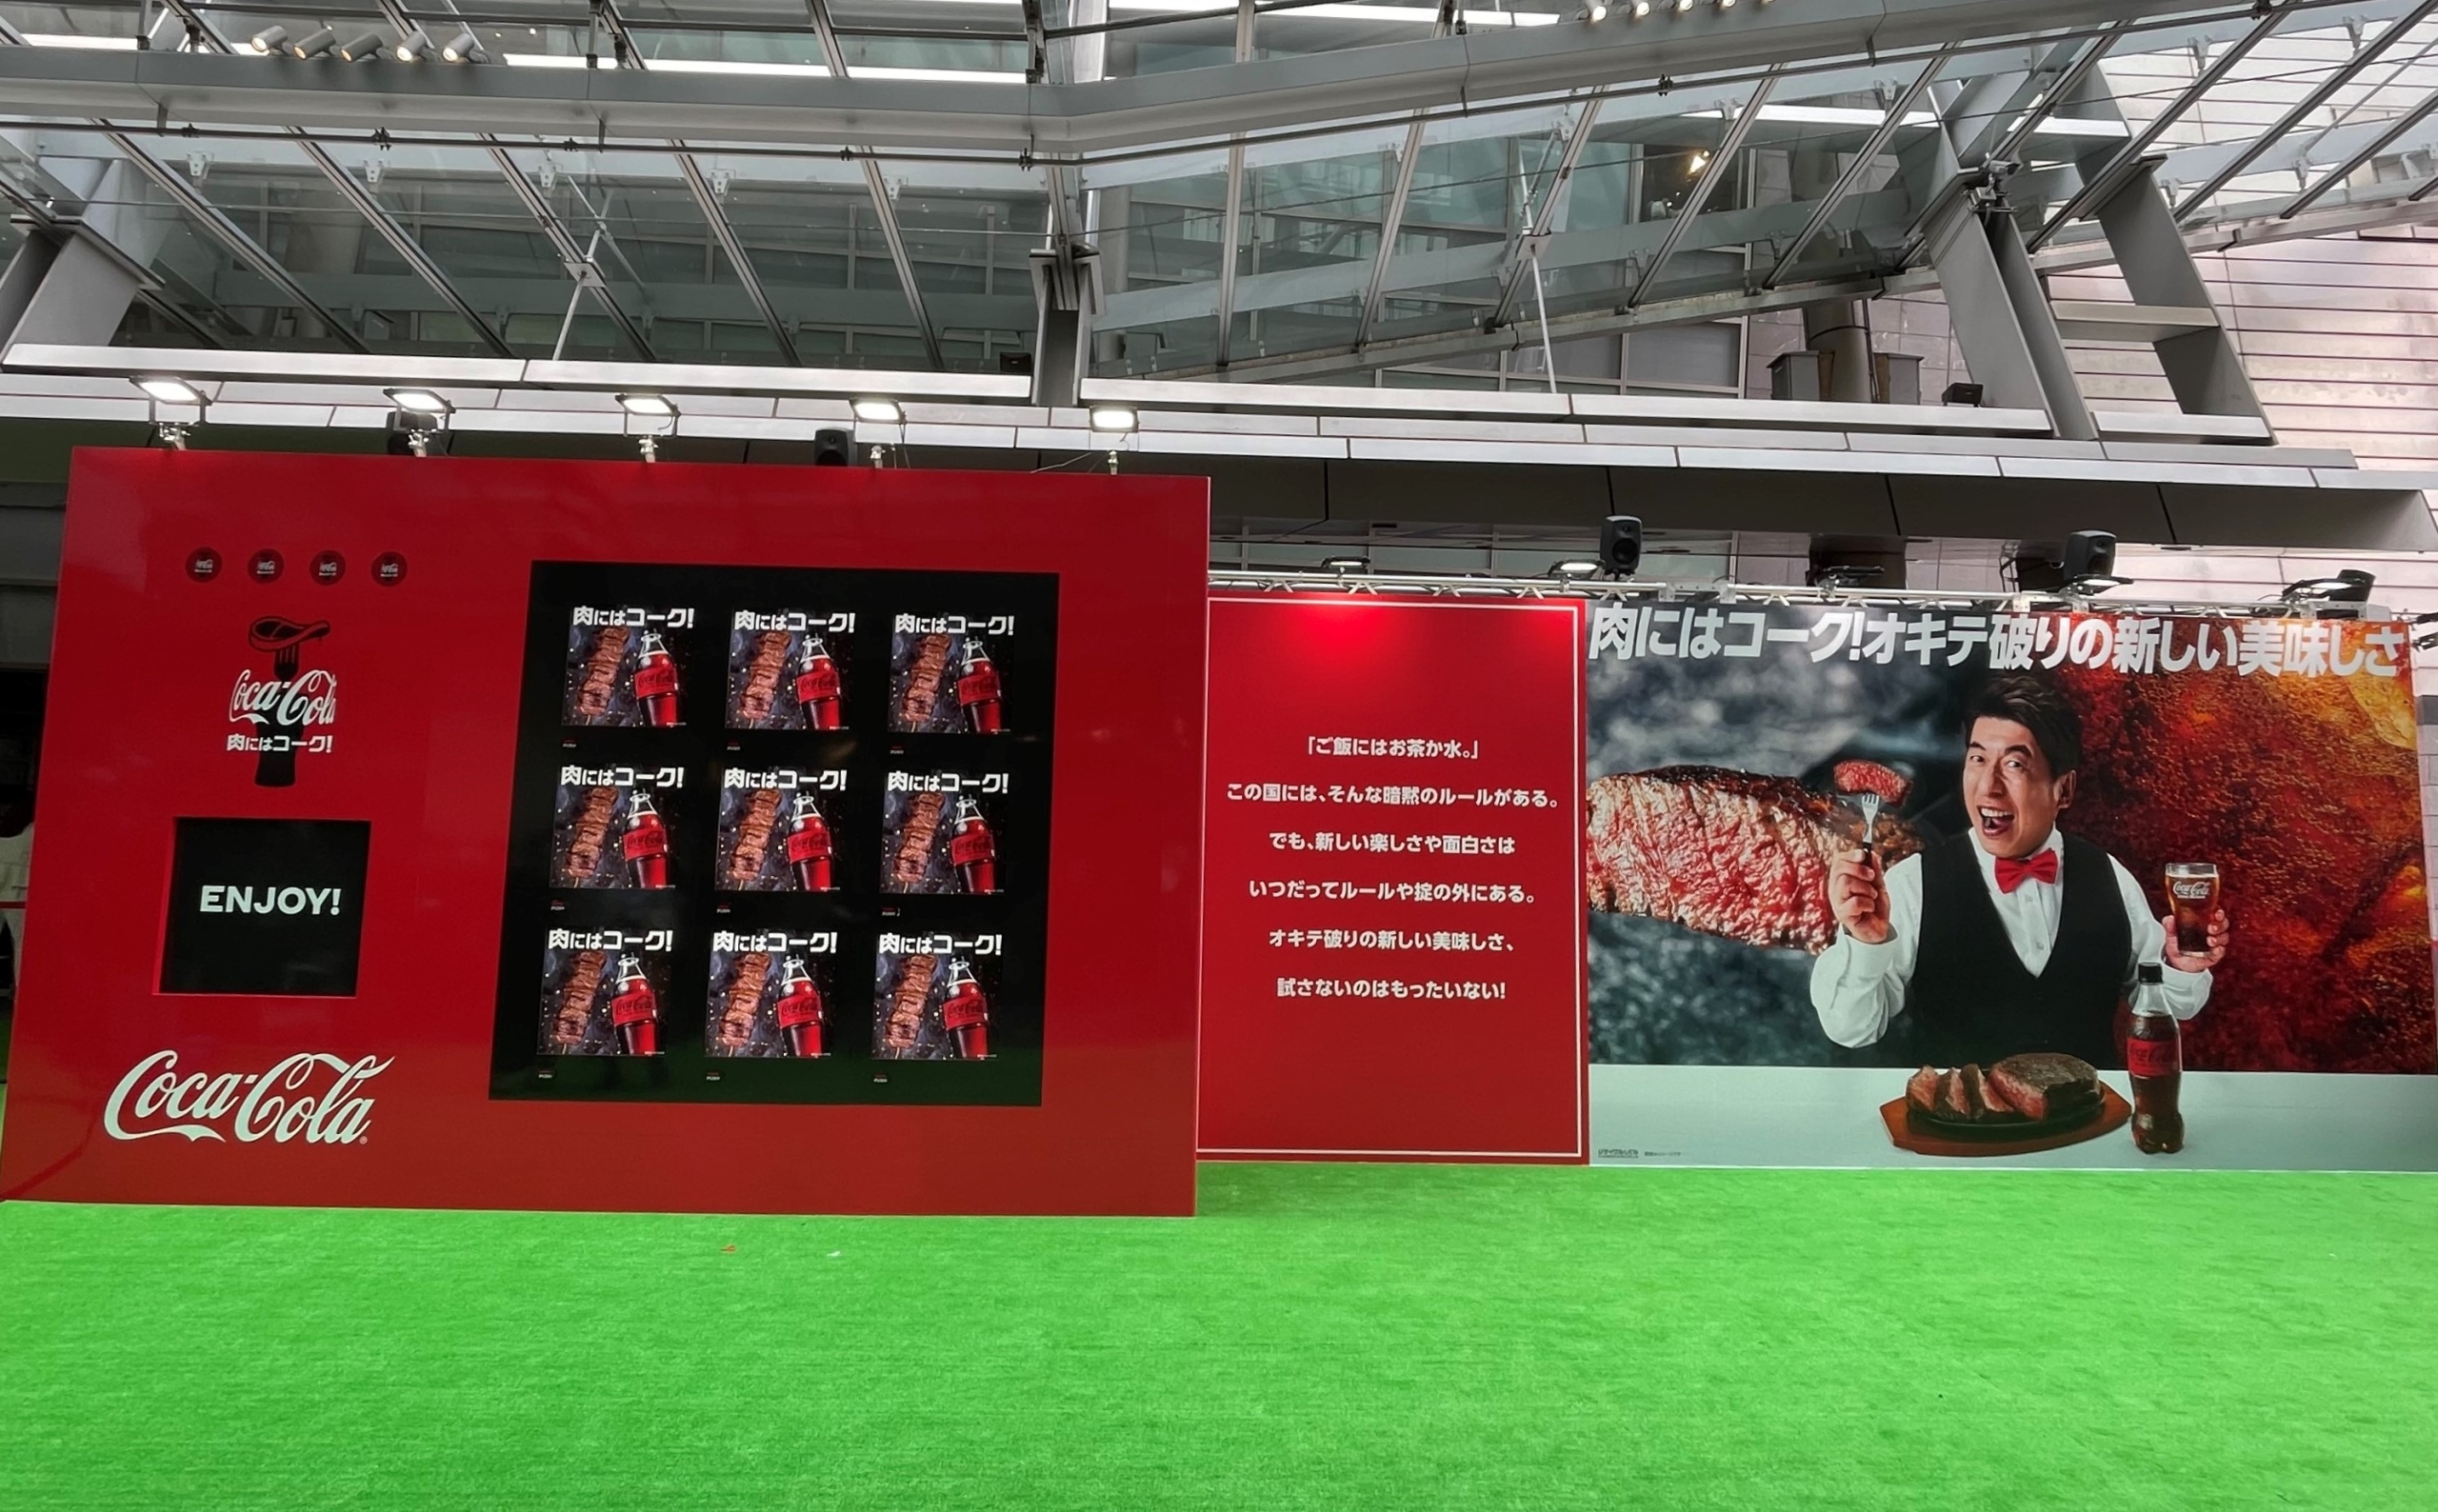 イベント「#肉にはコーク!オキテ破りの大試食会」会場に設置している巨大自動販売機